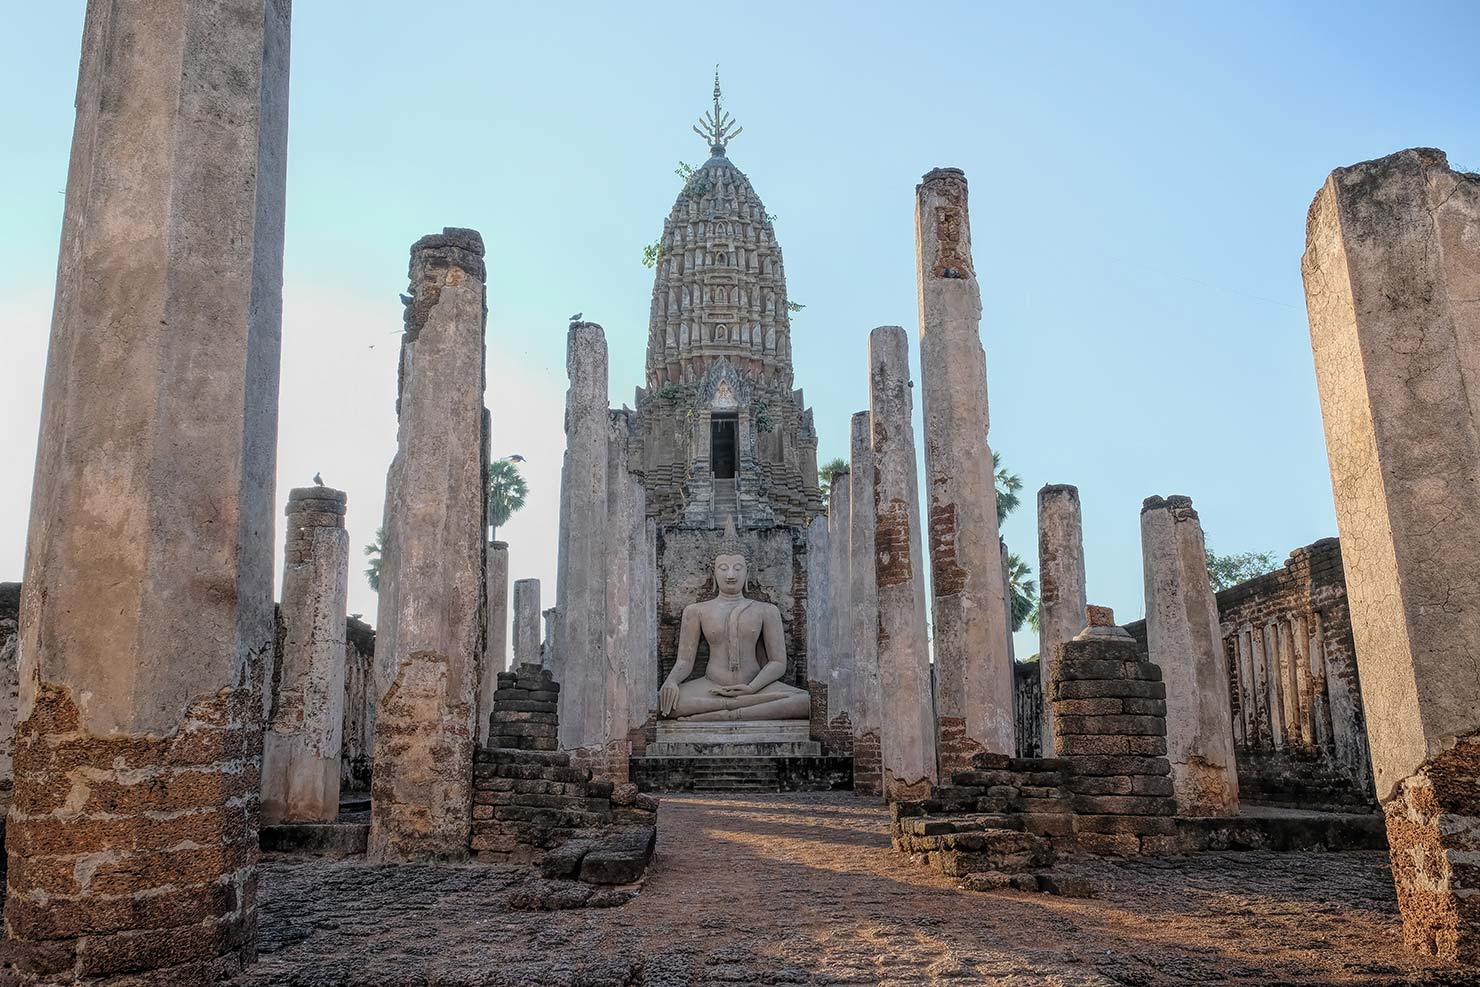 Thailand Si Satchanalai Historical Park Wat Phra Si Ratanamahathat Rajvorsvihara with Khmer prang and Buddha icon